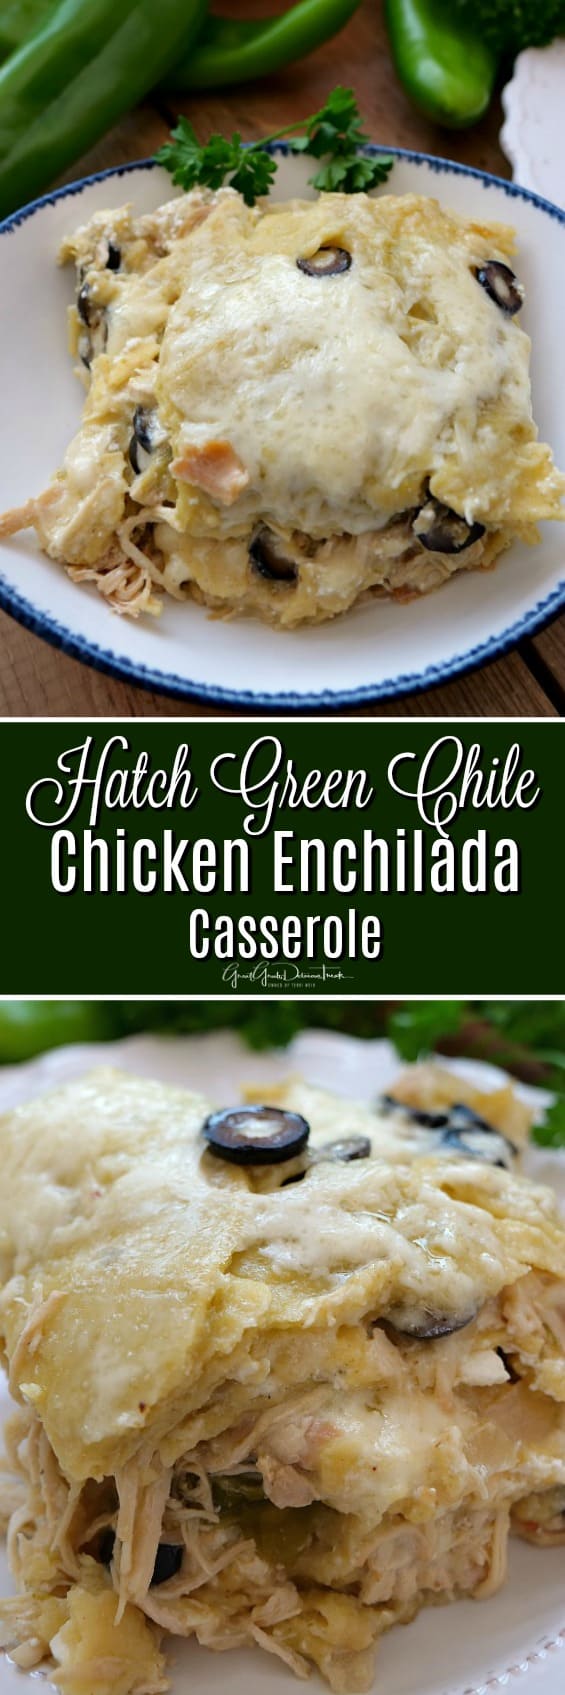 Hatch Green Chile Chicken Enchilada Casserole